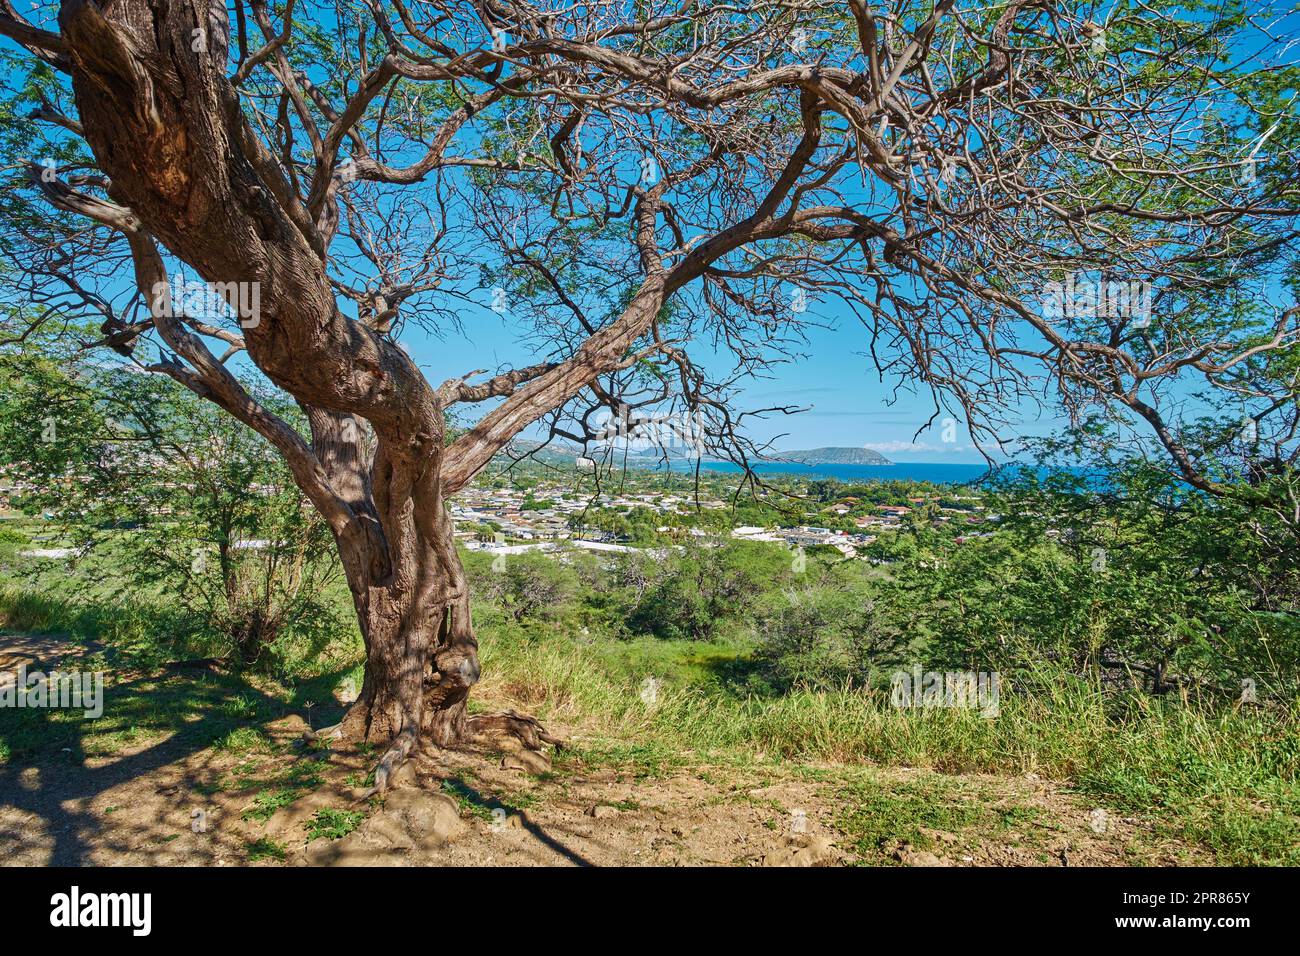 An einem Aussichtspunkt wachsen grüne Bäume mit Blick auf Koko Head, Hawaii an einem sonnigen Tag. Natur im Freien mit atemberaubenden Ausblicken auf eine Insel und friedlicher Harmonie eines tropischen Regenwaldes Stockfoto